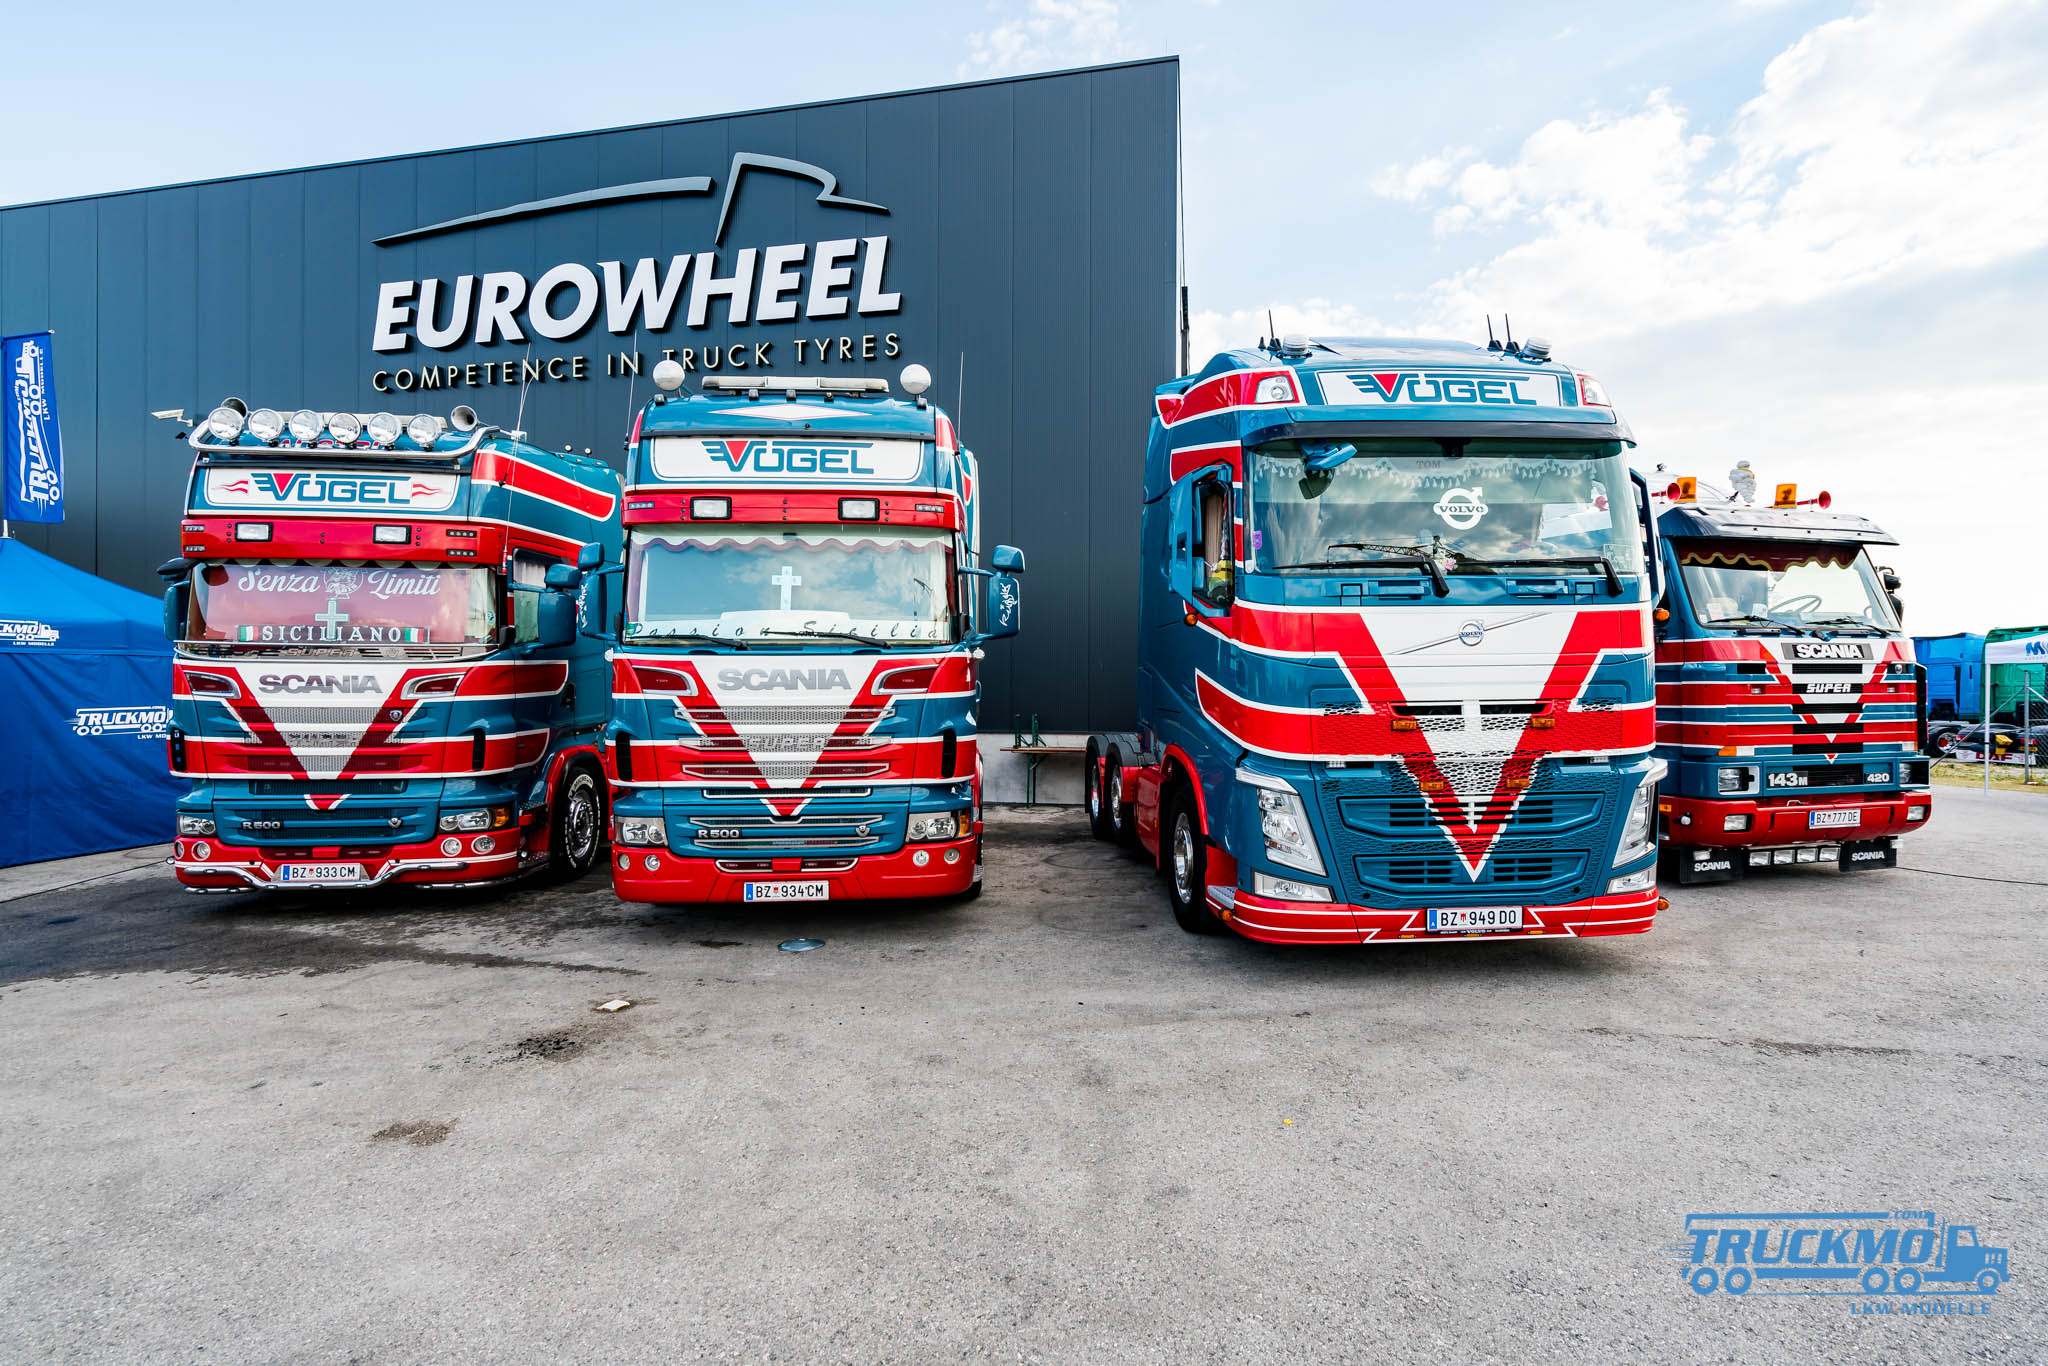 Truck_Event_Austria_Vorchdorf_2017_Truckmo_Scania_MAN_Volvo_Mercedes_Iveco_Showtruck_LKW (9 von 96)